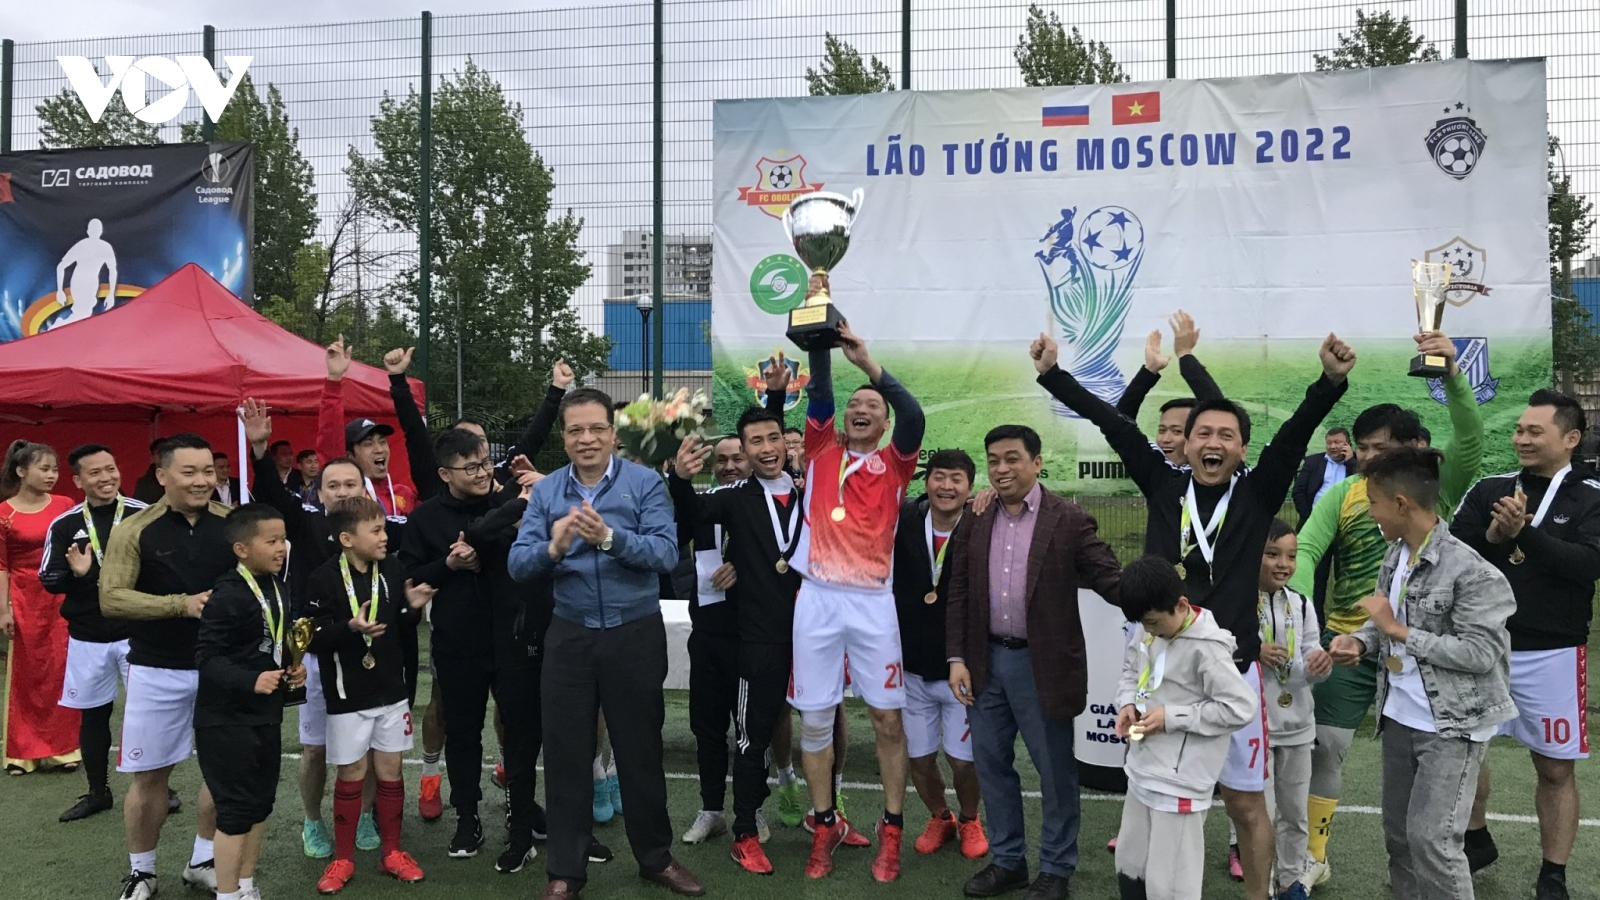 Bế mạc giải bóng đá Lão tướng Moscow 2022 cho cộng đồng người Việt tại Nga 